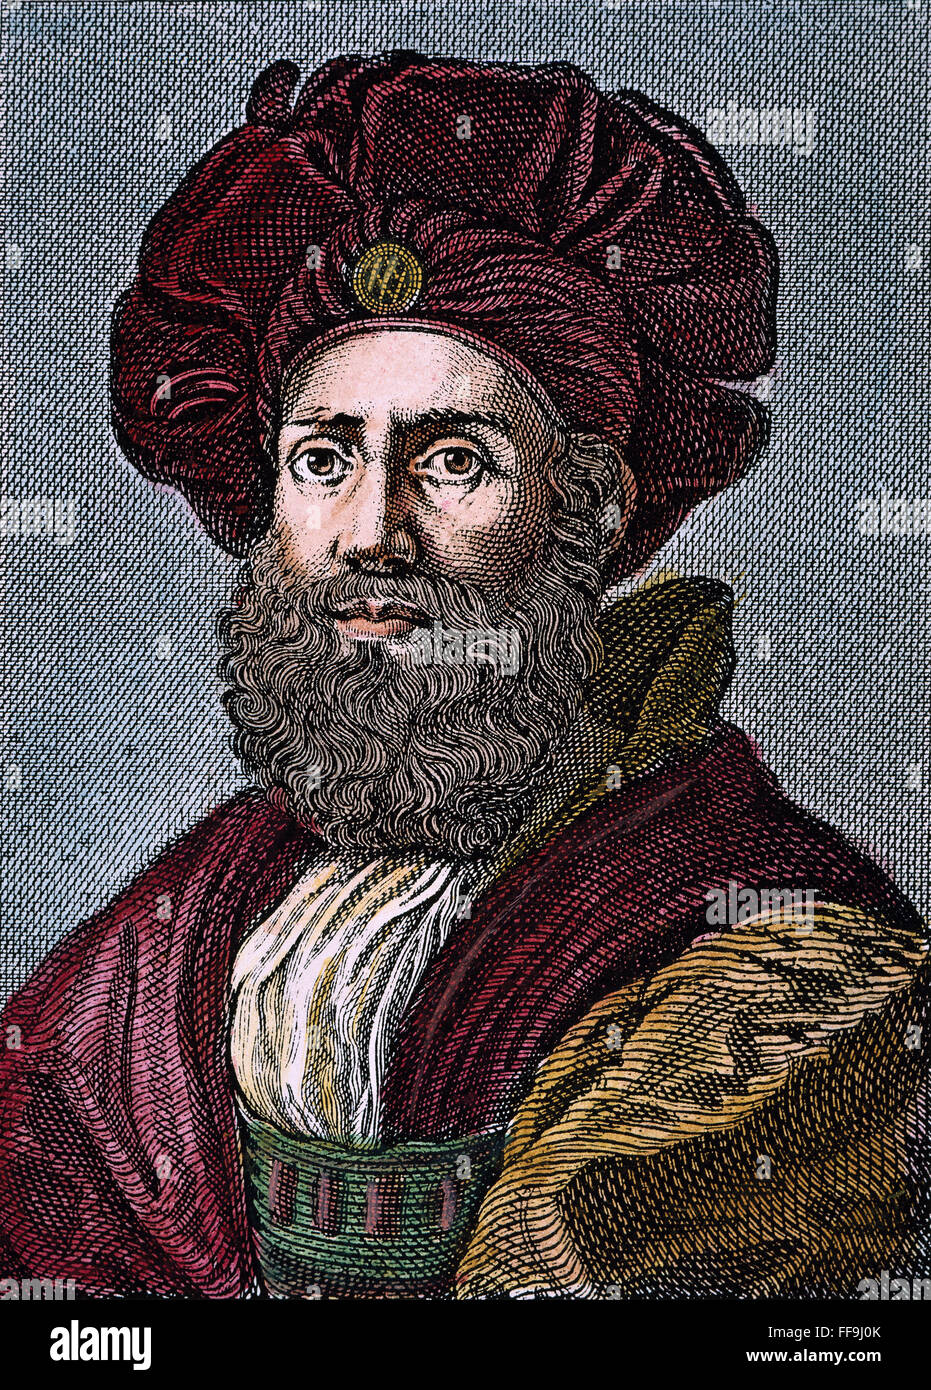 BALDASSARE CASTIGLIONE /n(1478-1529). Italienischer Diplomat und Schriftsteller. Stahl, Gravur, Englisch, 1821, nach einem Gemälde von Raffael. Stockfoto